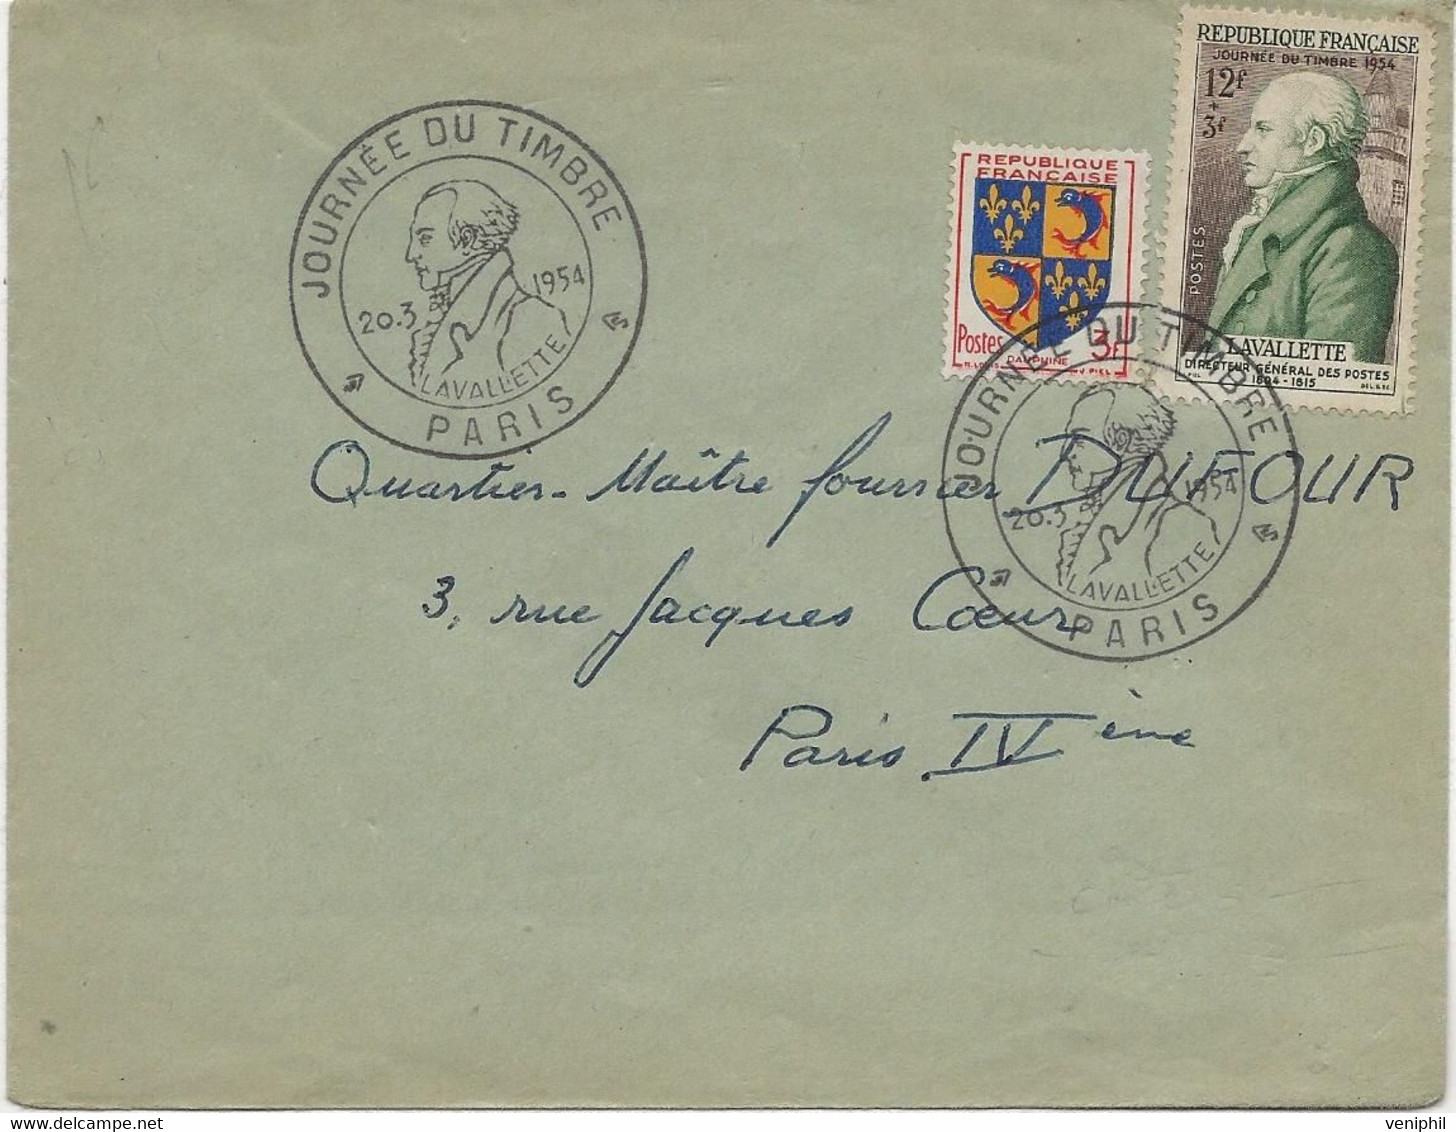 LETTRE AFFRANCHIE N° 954 + N° 969 - CACHET ILLUSTRE -JOURNEE DU TMBRE -PARIS -1954 - Gedenkstempel